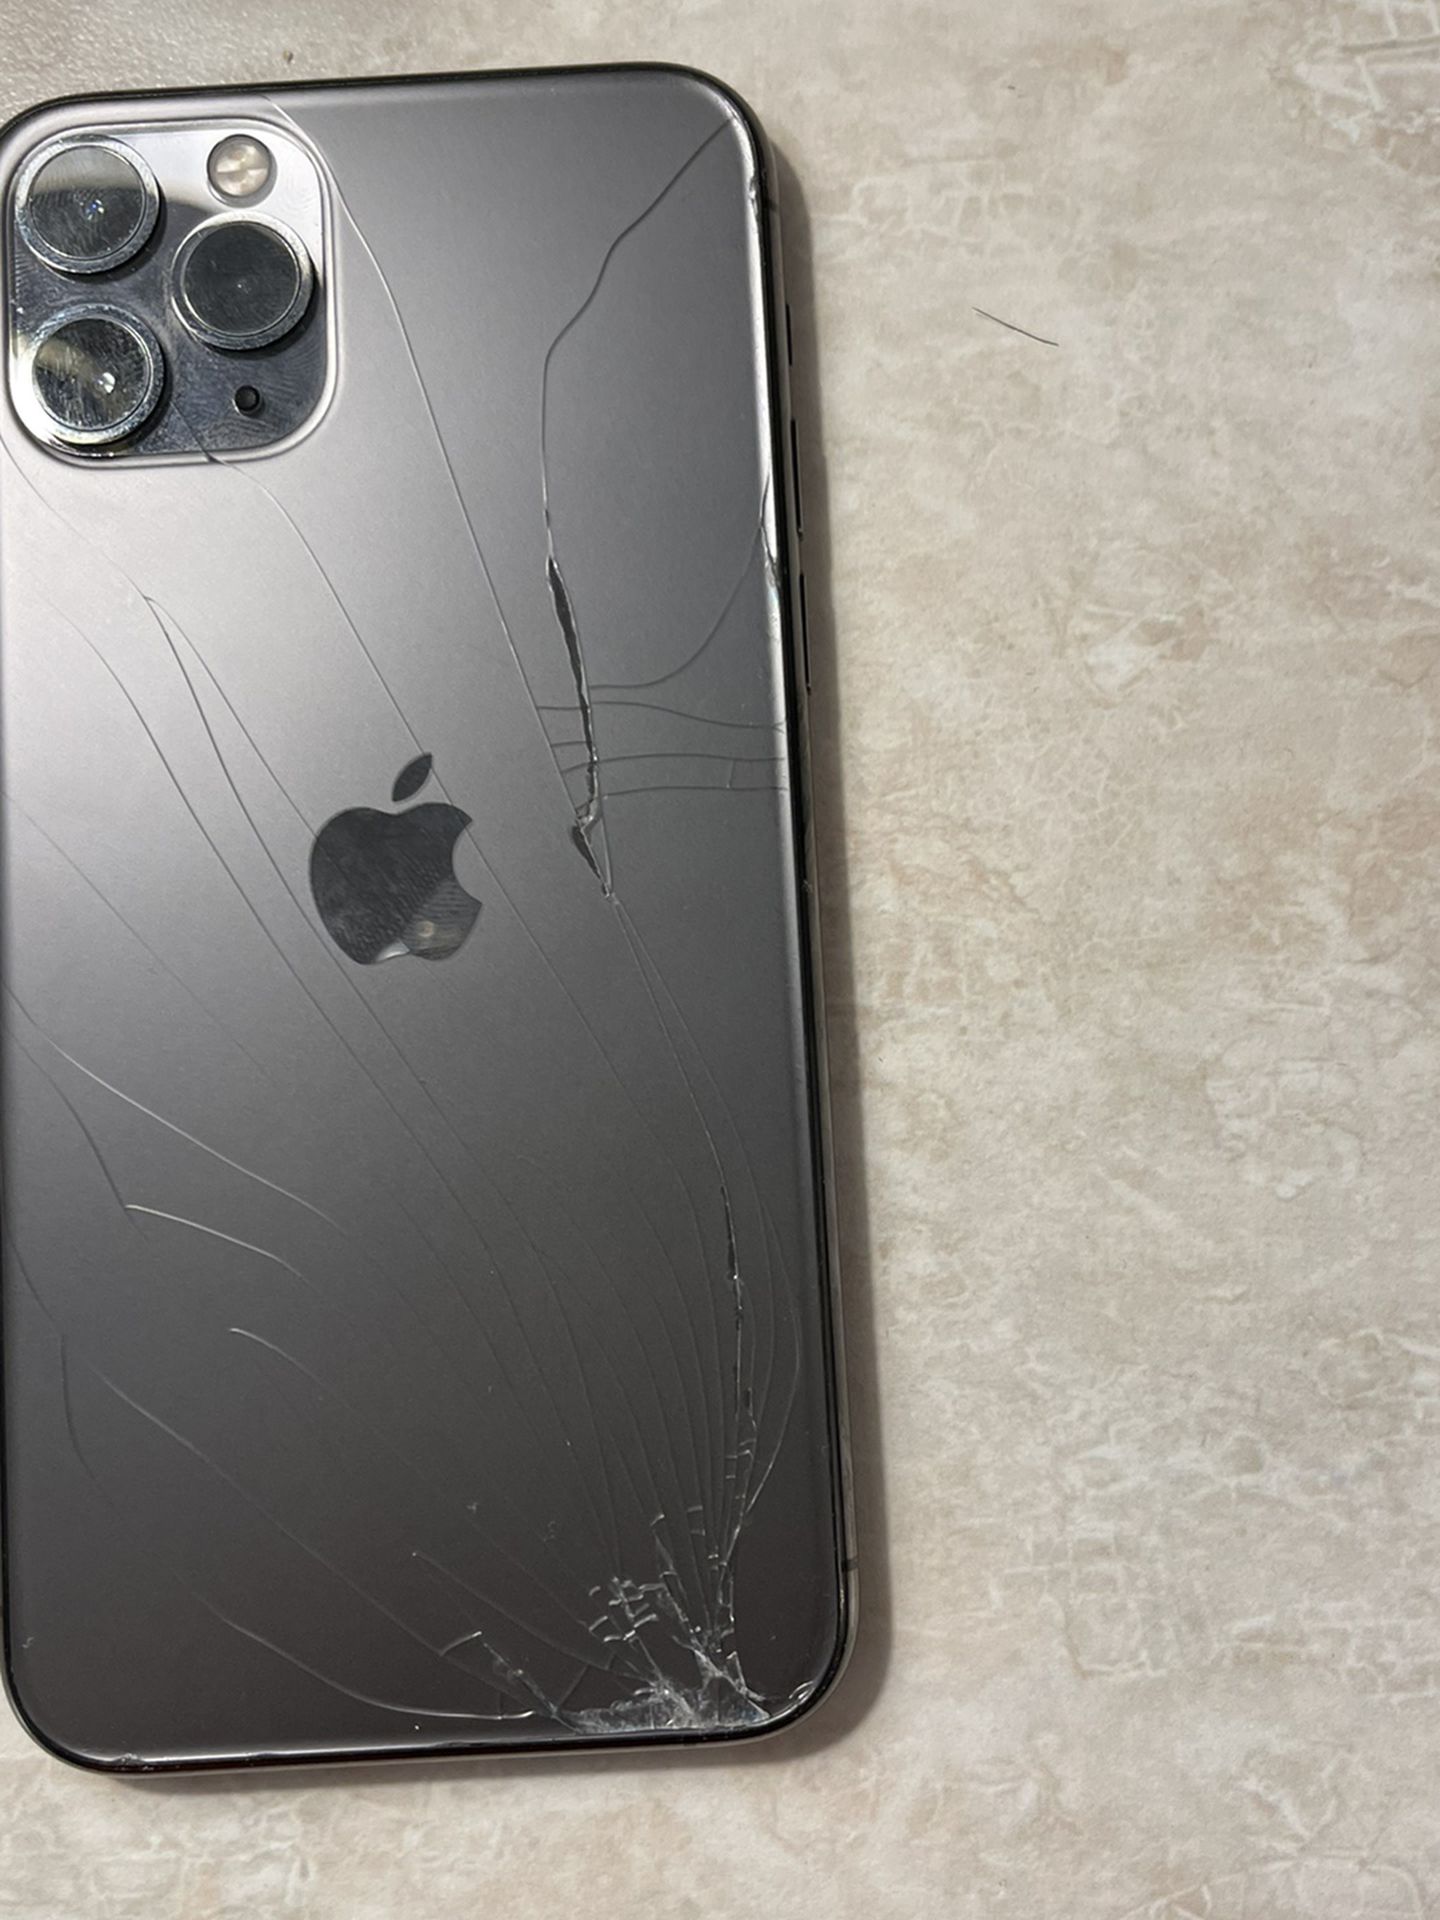 iPhone 12 Pro Needs Repair